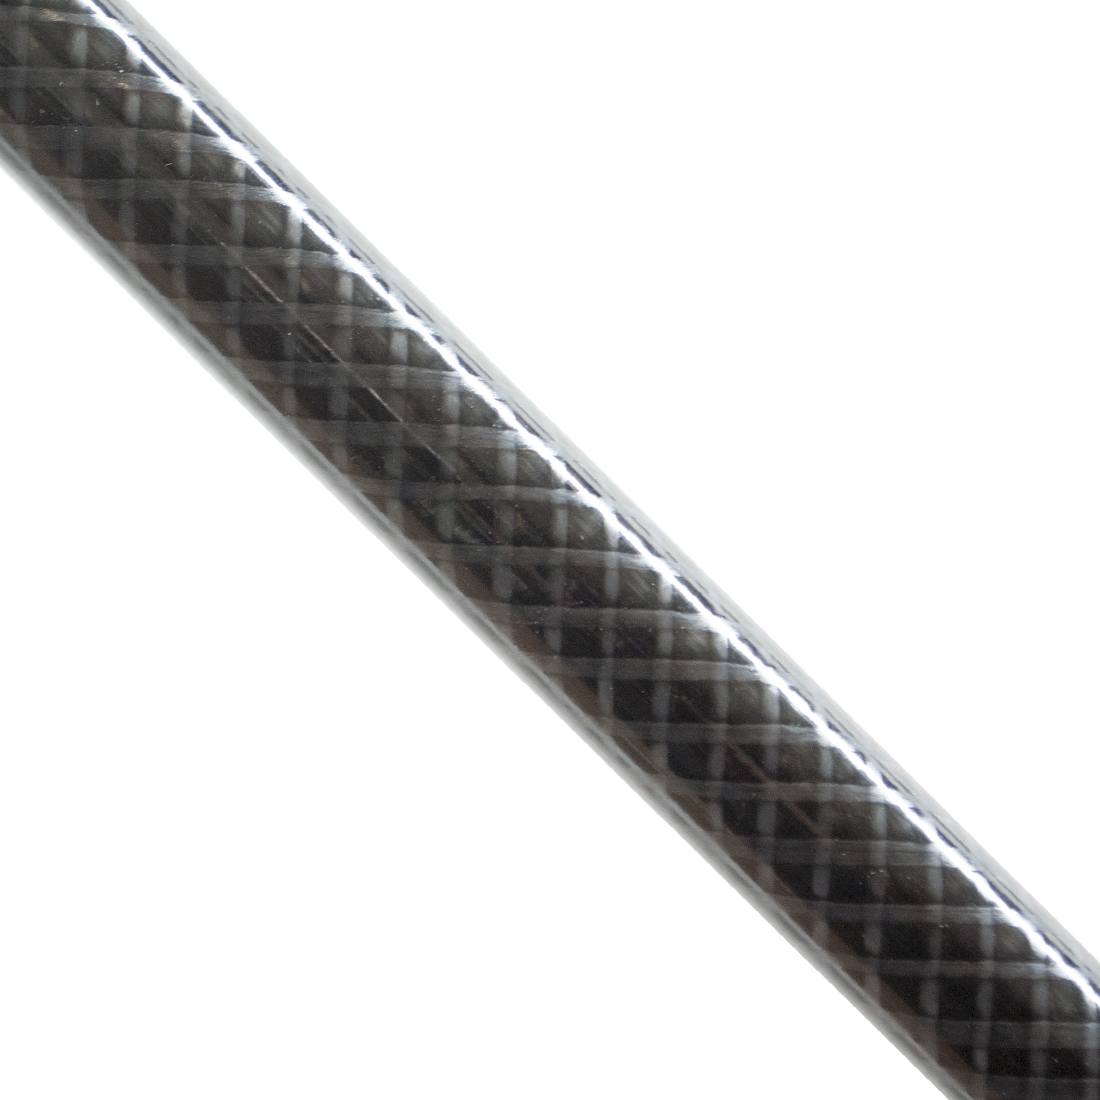 Unger nLite Carbon Extension Pole - 11 Foot - Carbon Fiber Detailed Close-Up View